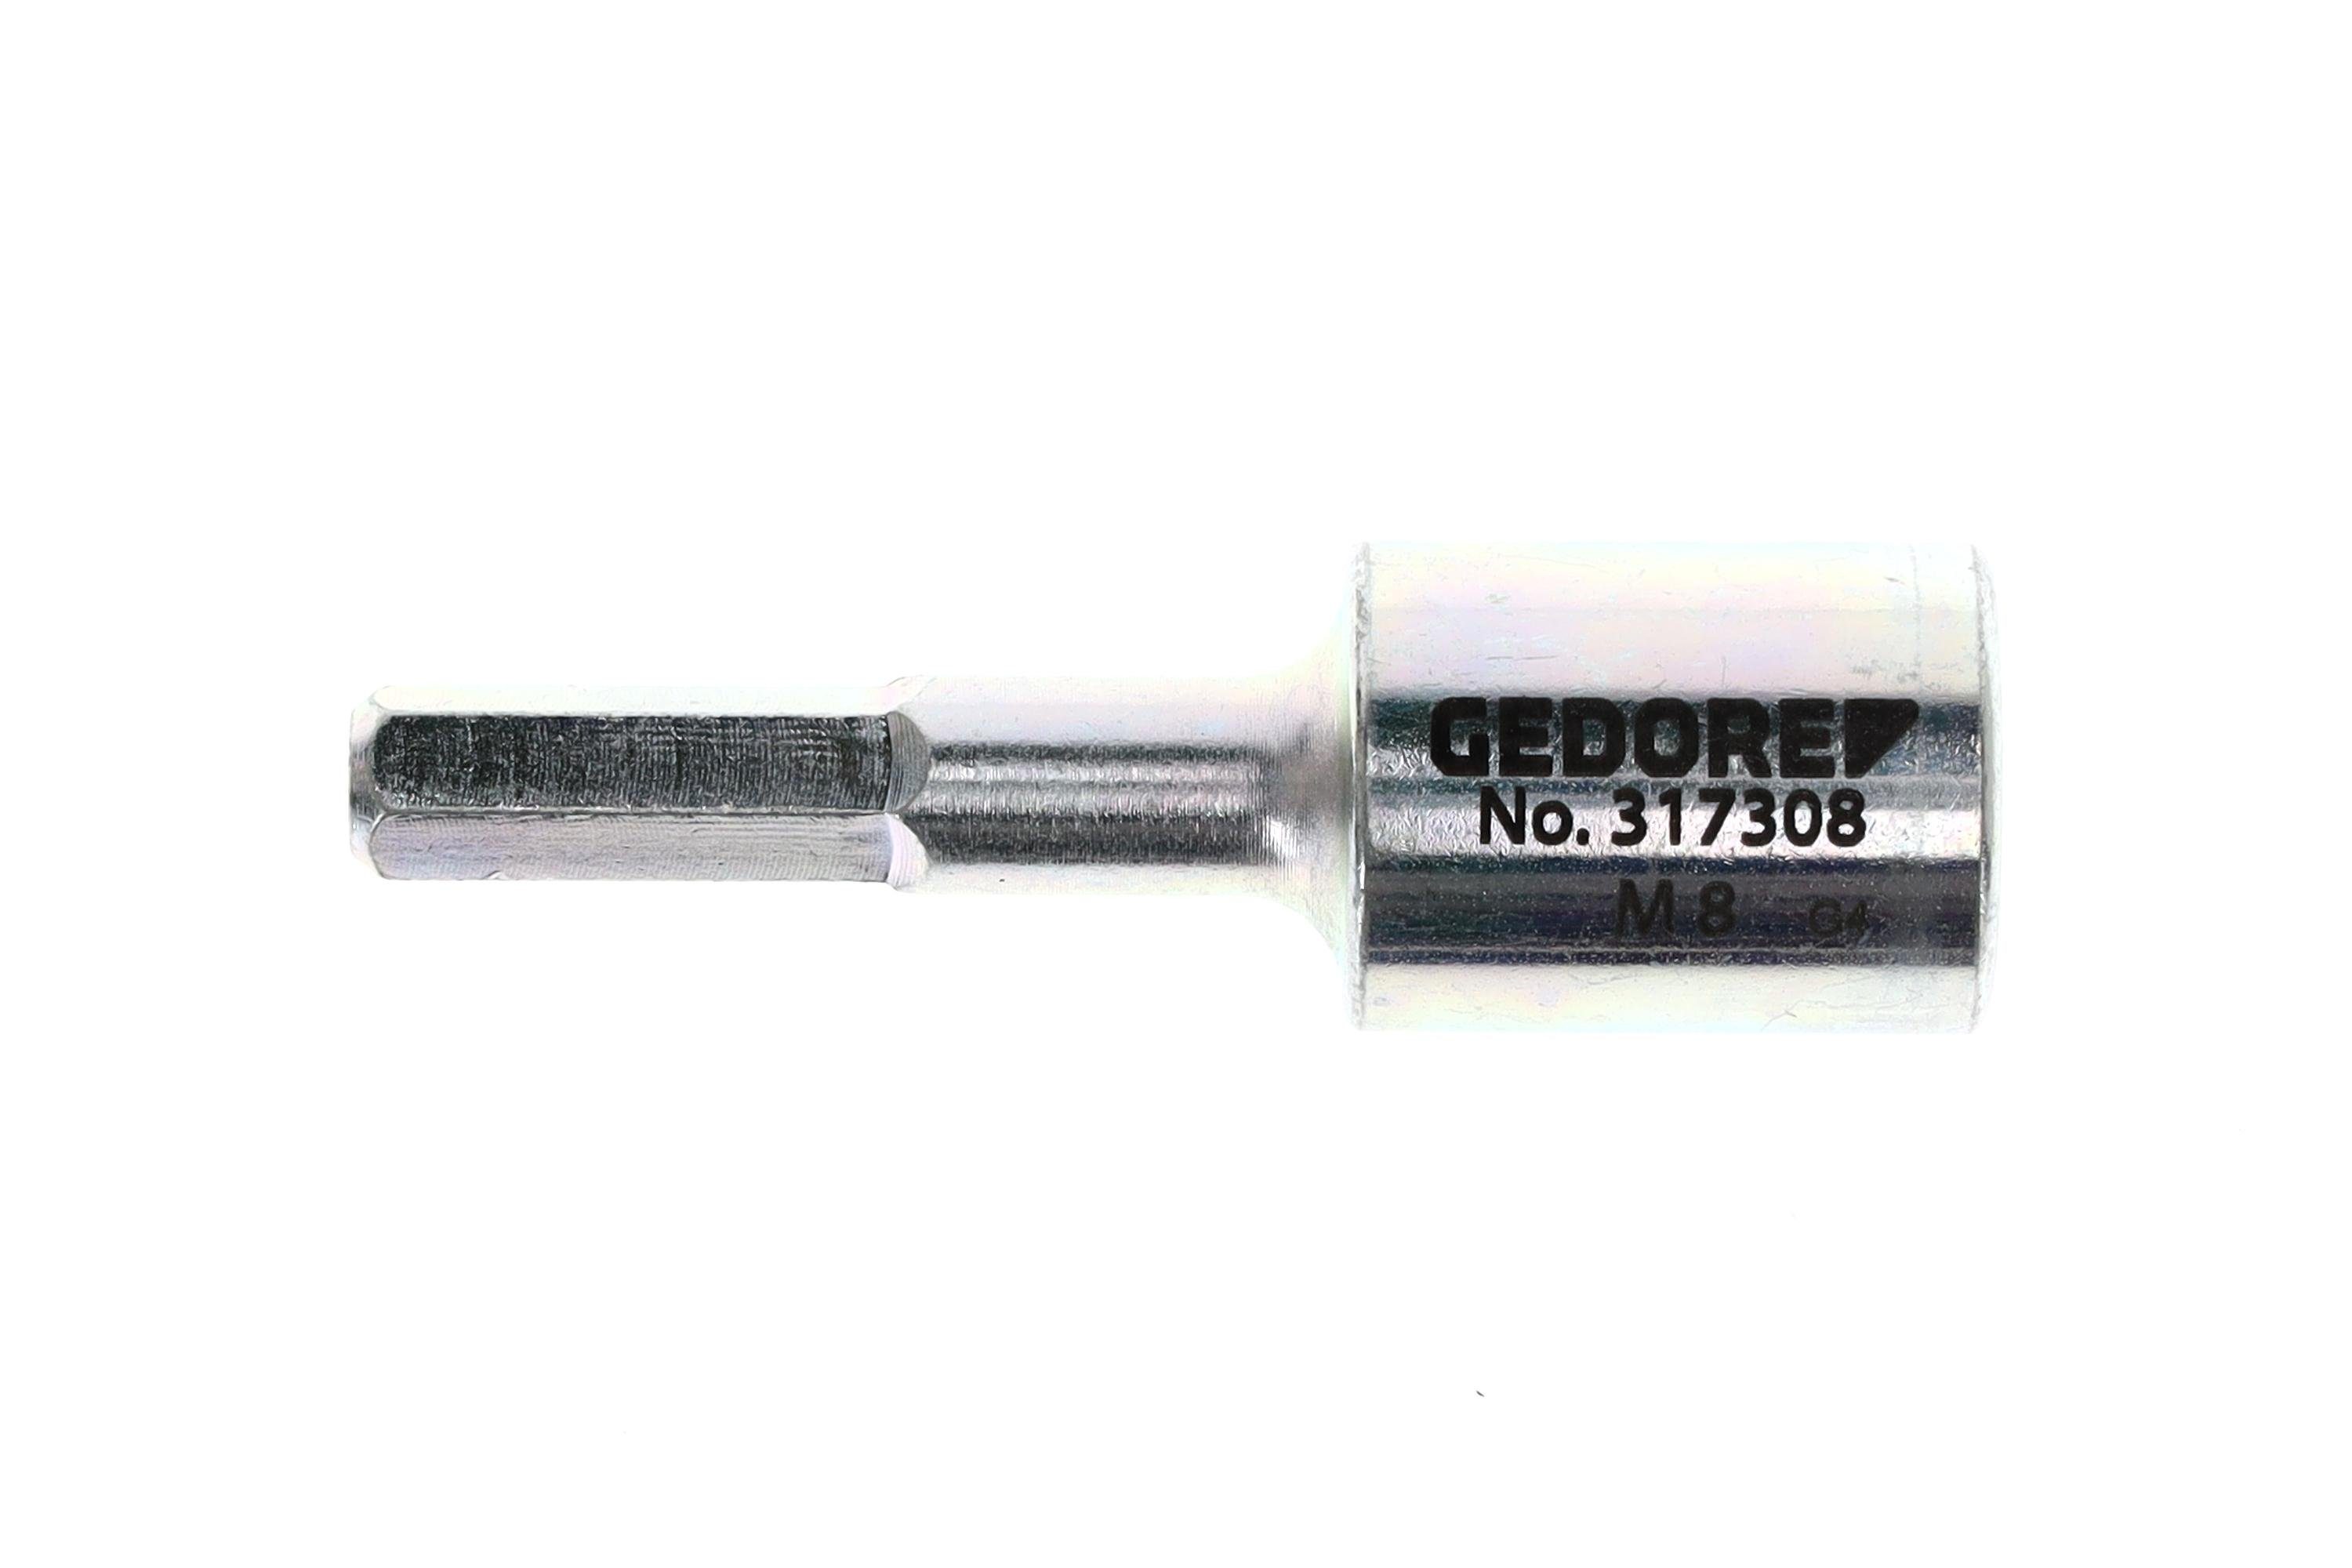 M8 Bit-Schraubendreher und 317308 Ausdrehwerkzeug Gedore Ein-